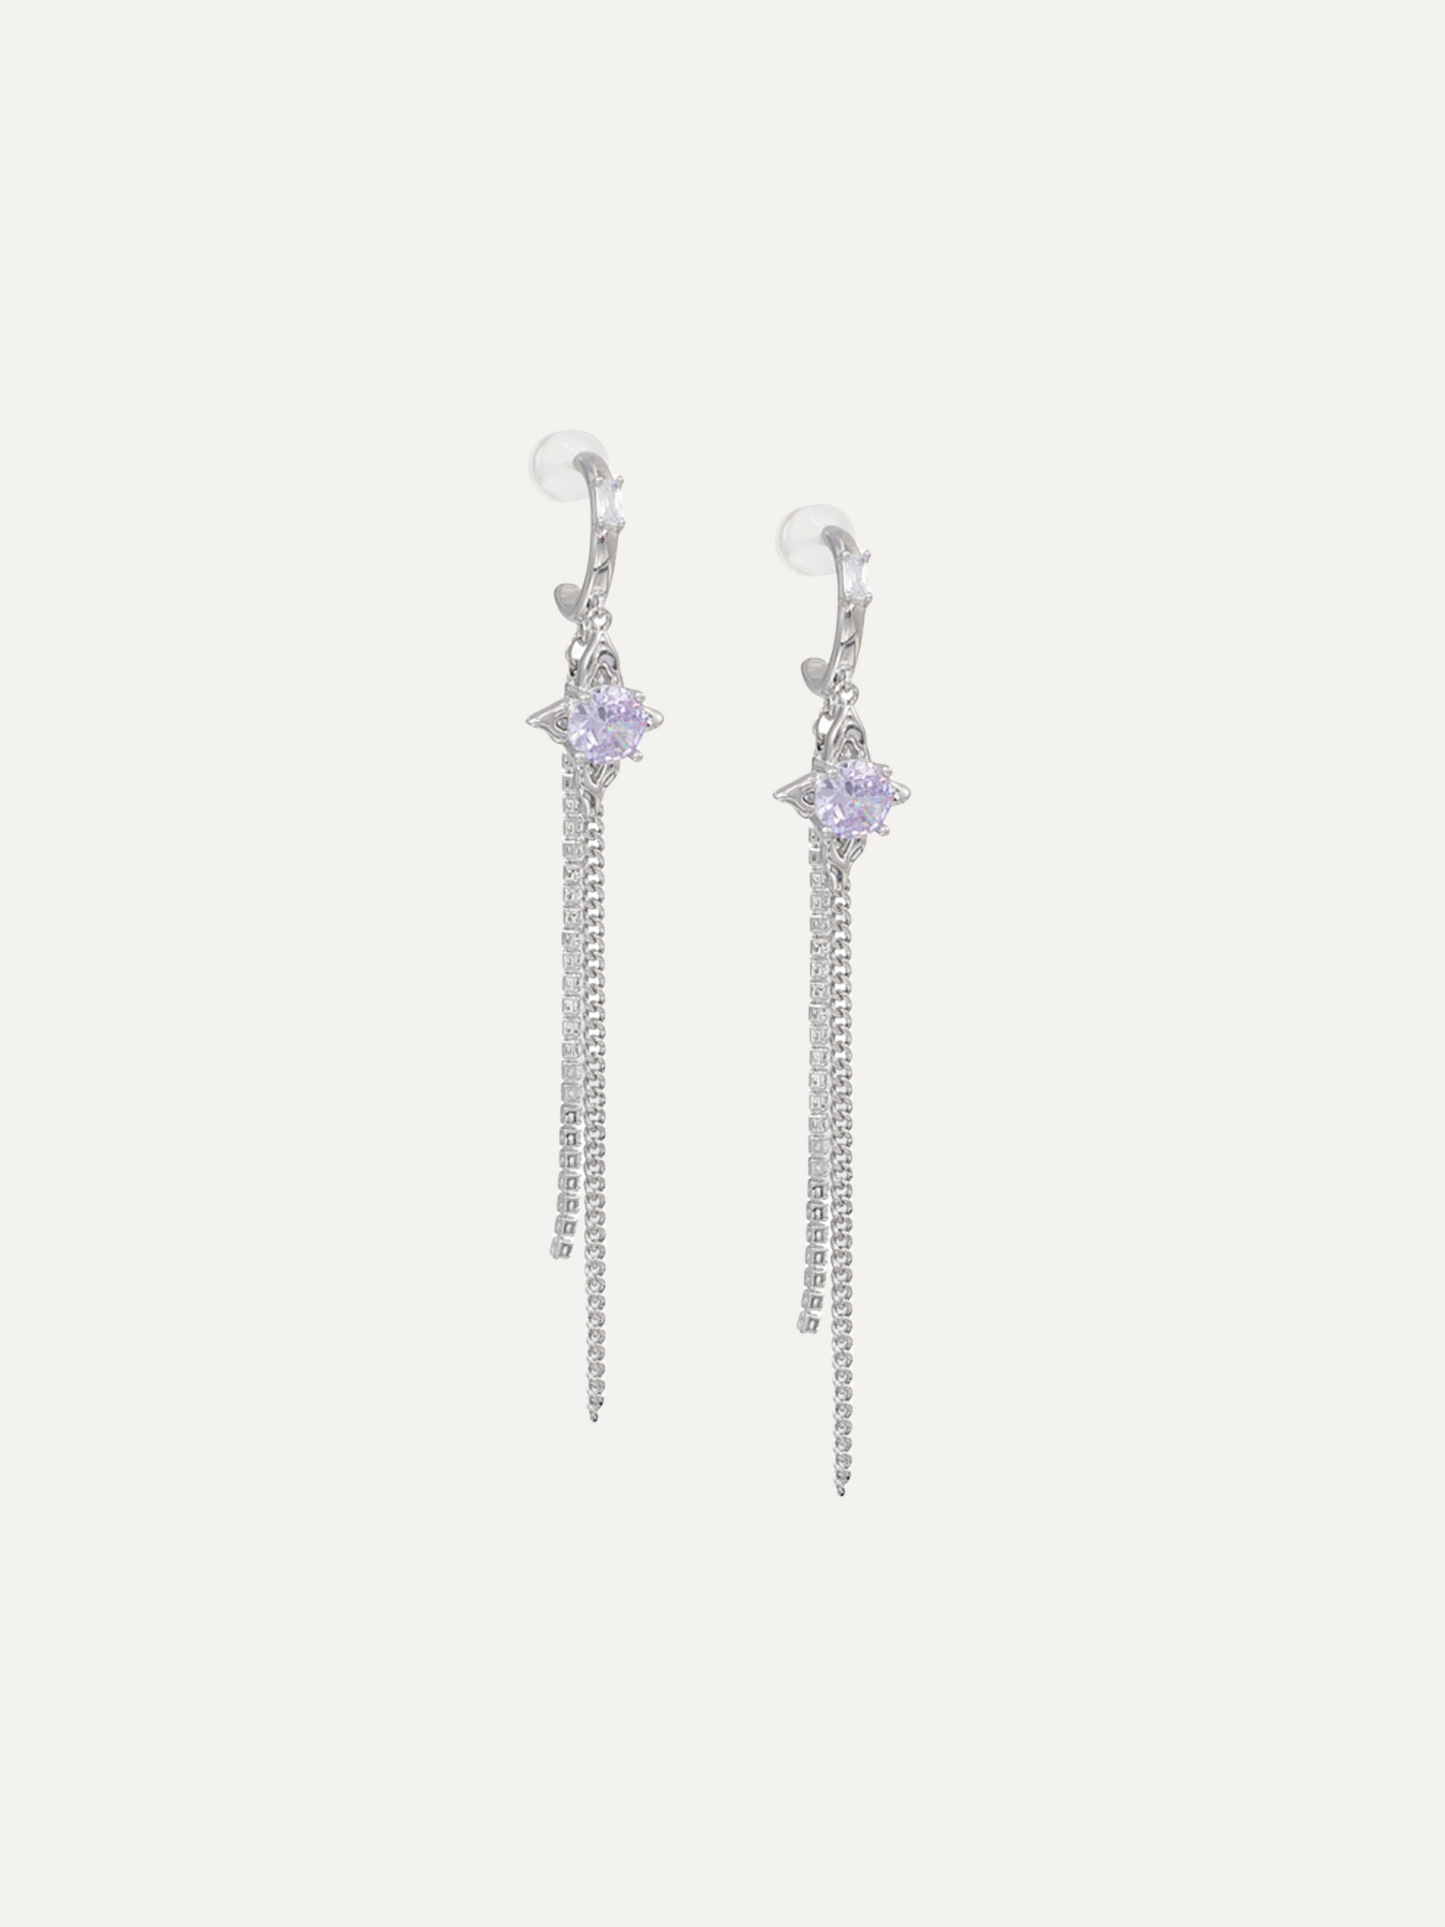 Mysterious Series Romantic Purple Tassel Silver Earrings for Women